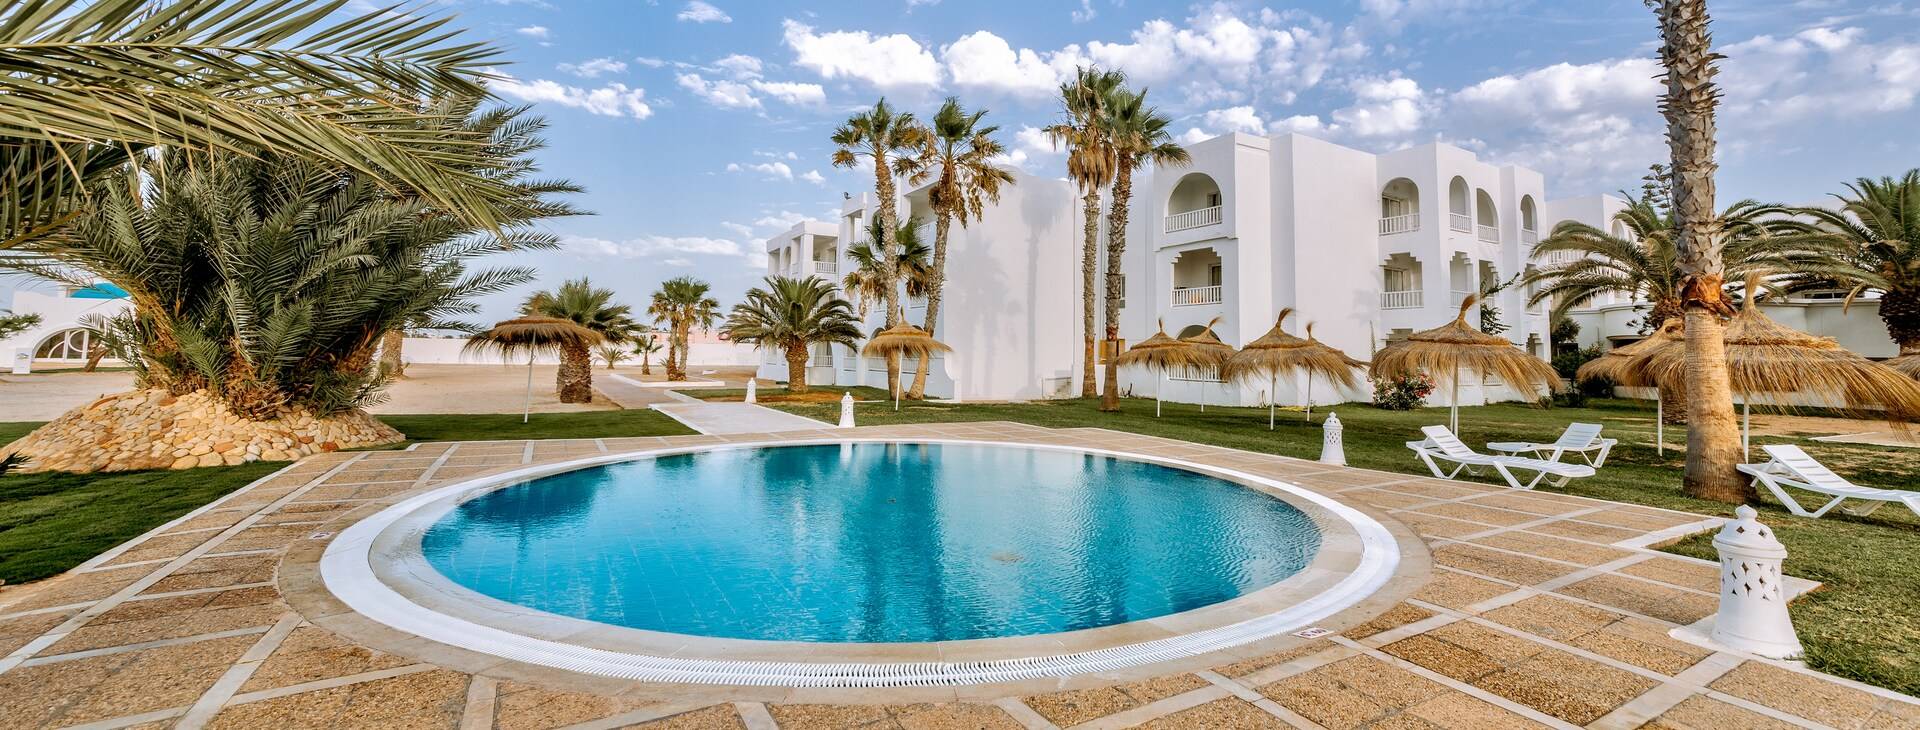 Djerba Golf Resort & Spa Obrázek1